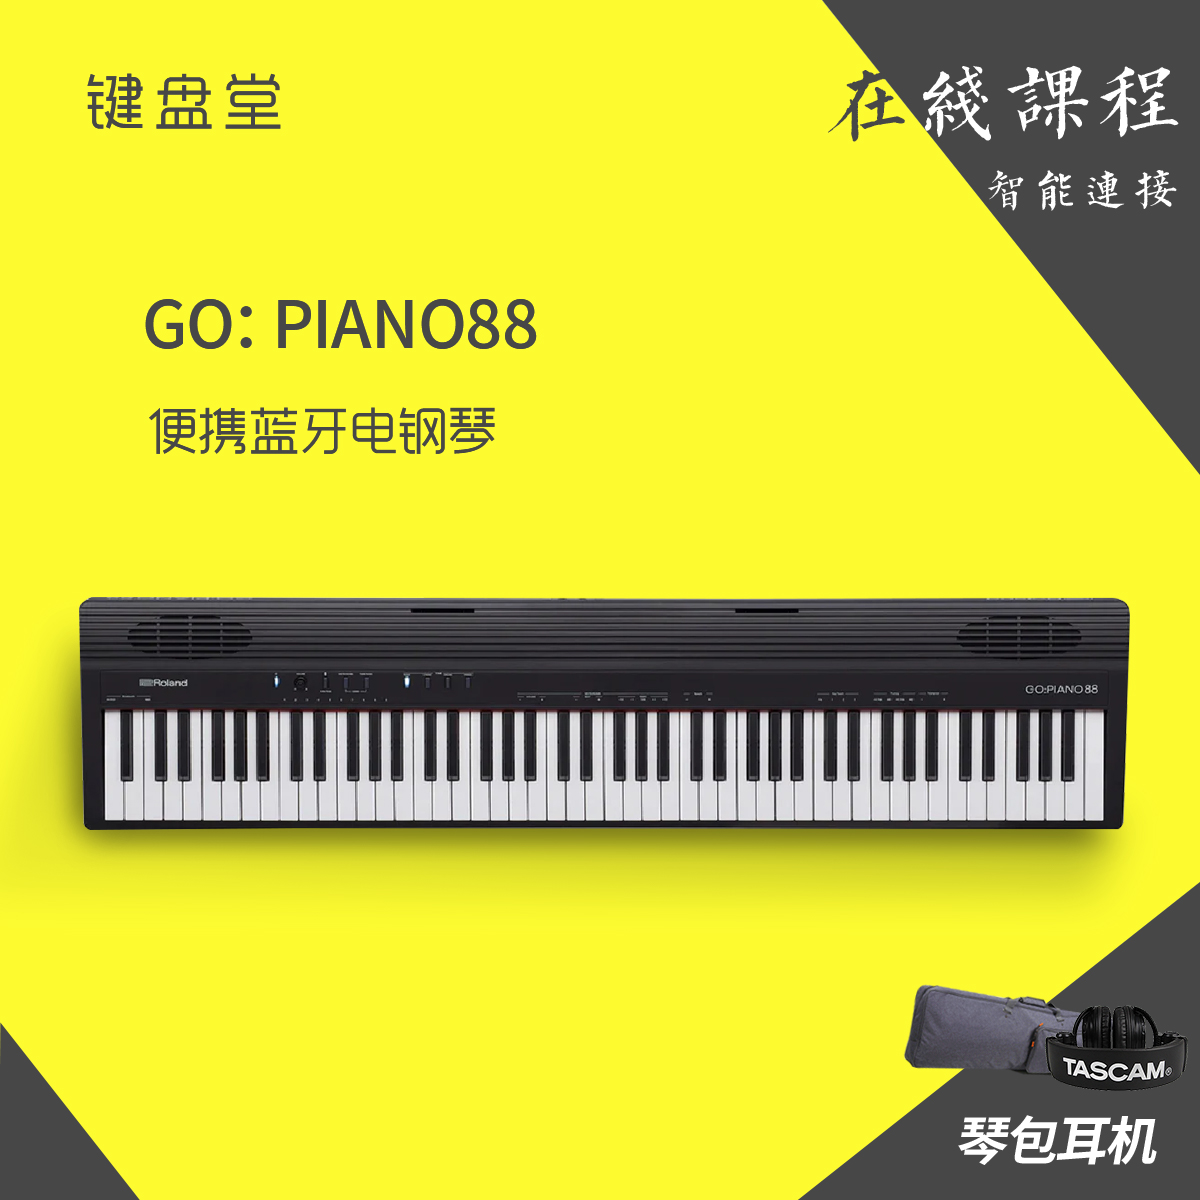 Roland罗兰GO-88P 88键专业蓝牙数码钢琴成人初学者便携电子钢琴